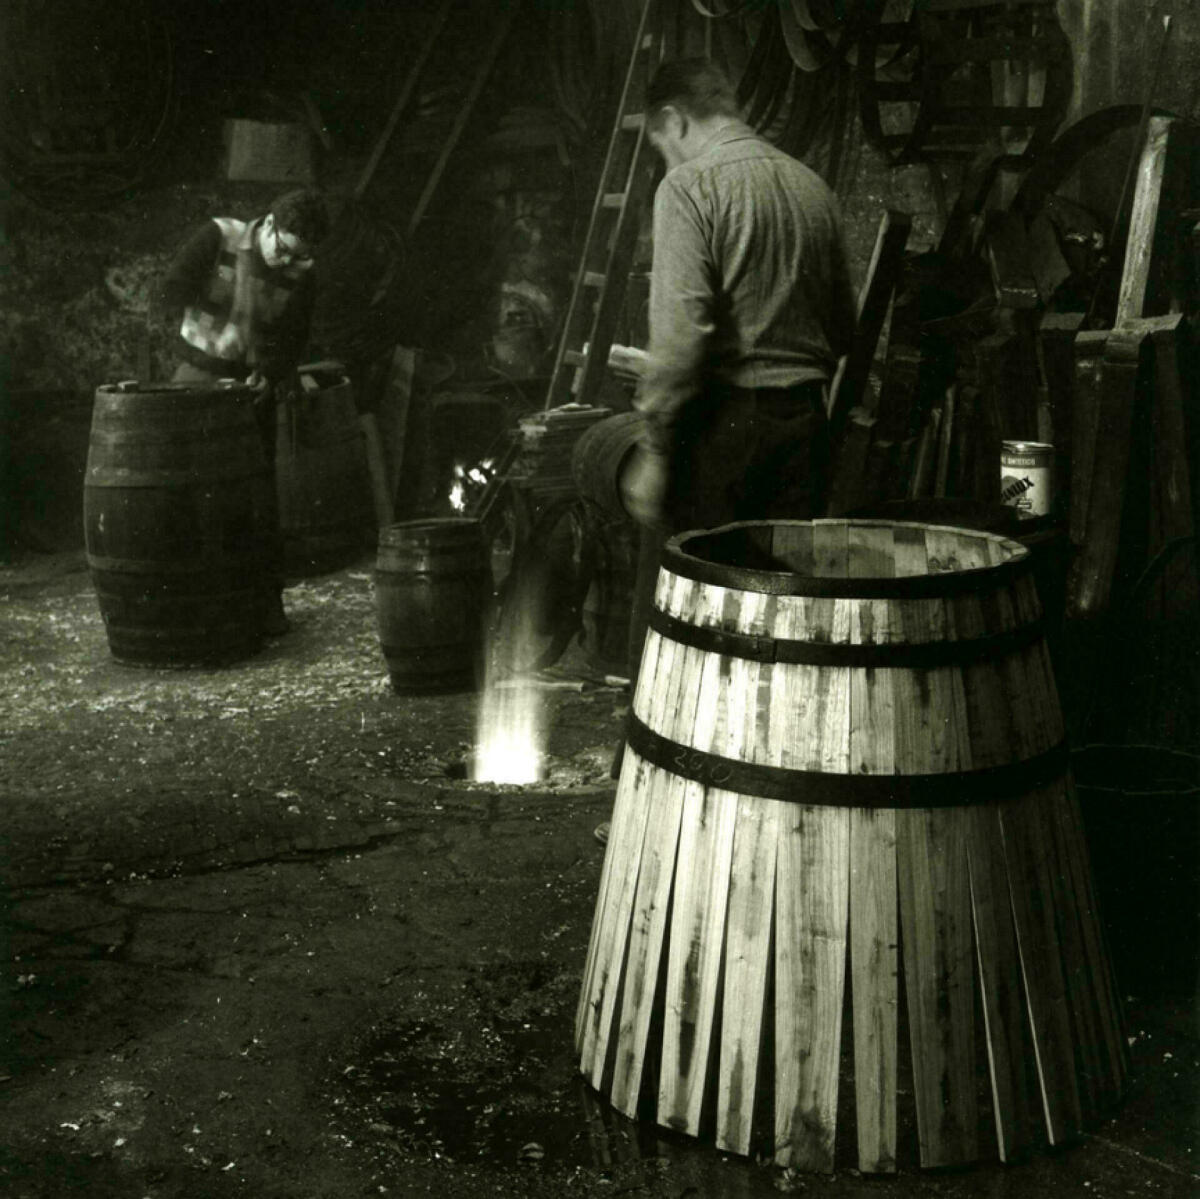 Foto en blanc i negre. Es veuen 2 artesans fent botes de vi en el seu taller